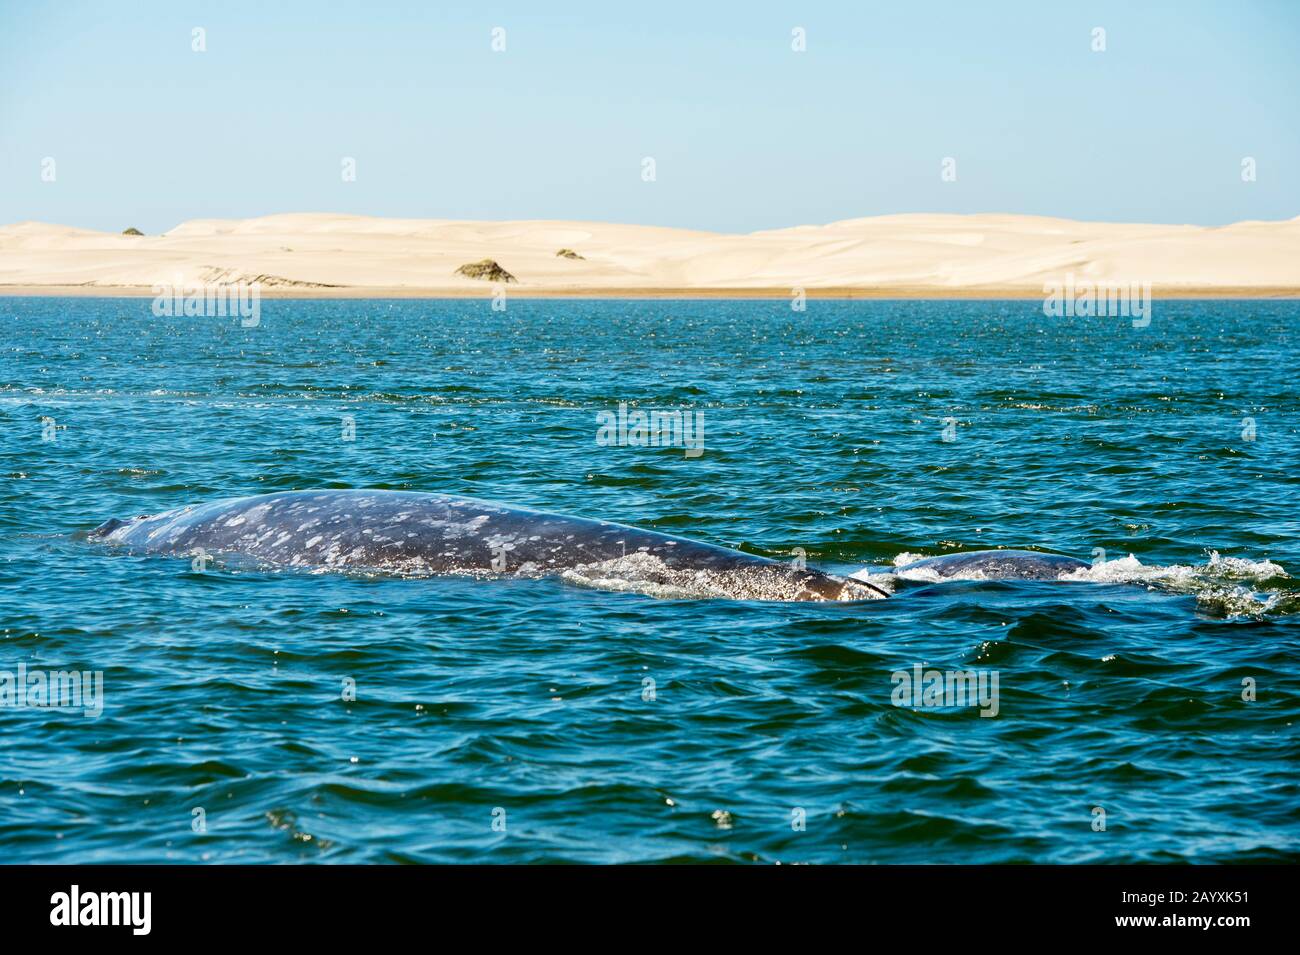 Une baleine grise (Eschrichtius robustus) dans la baie de Magdalena, un des lieux de reproduction où ils accouchent, près de San Carlos en Basse-Californie, au Mexique. Banque D'Images